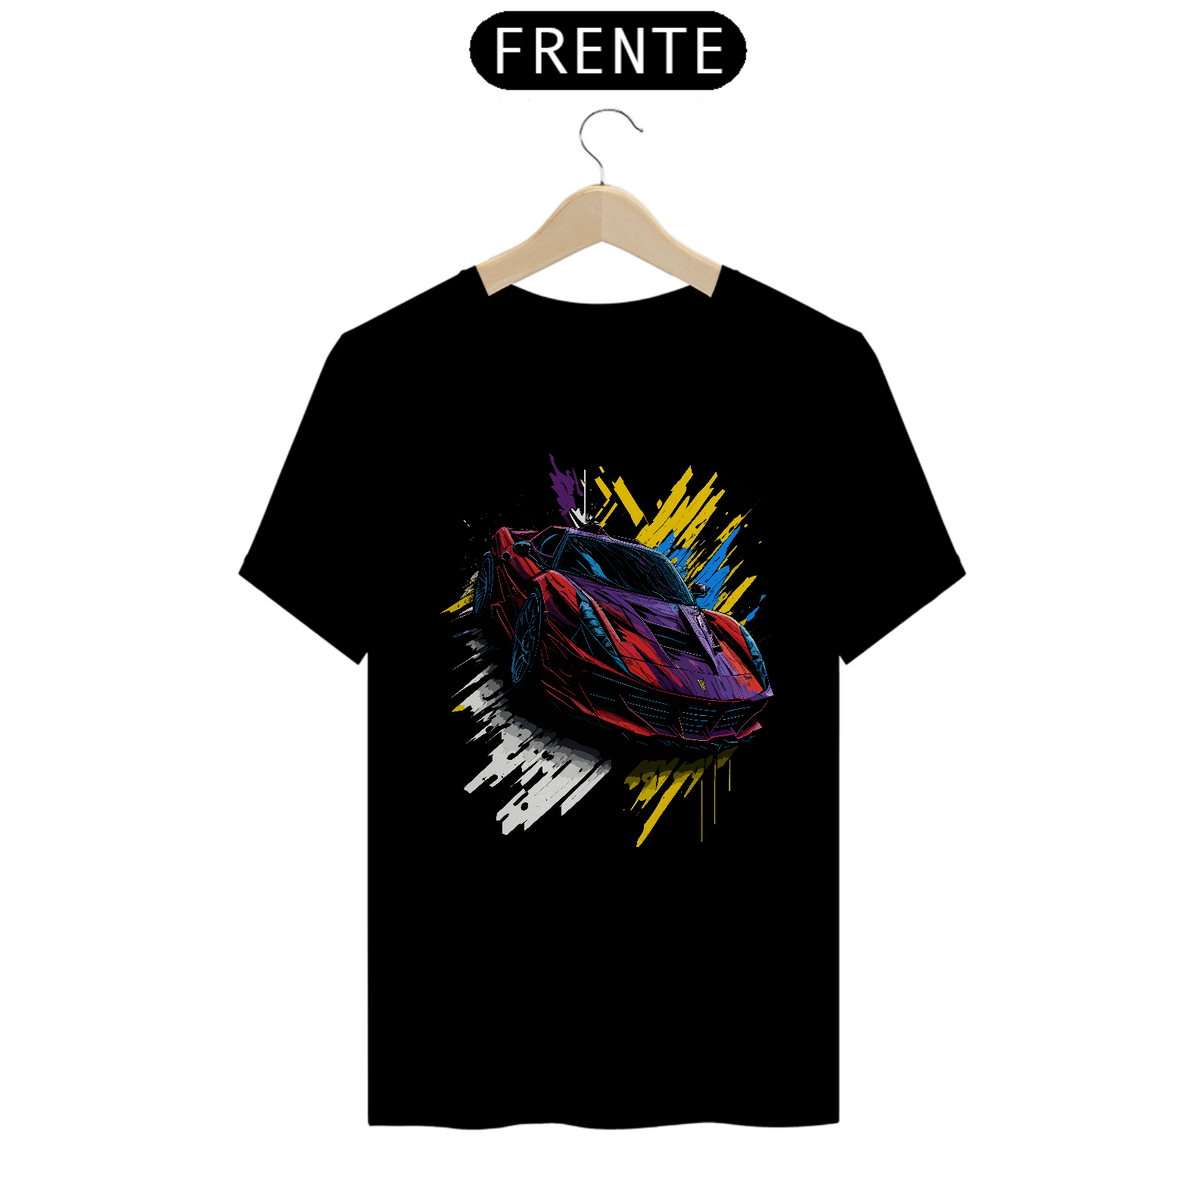 Nome do produto: Camiseta Ferrari - Coleção Grafitti